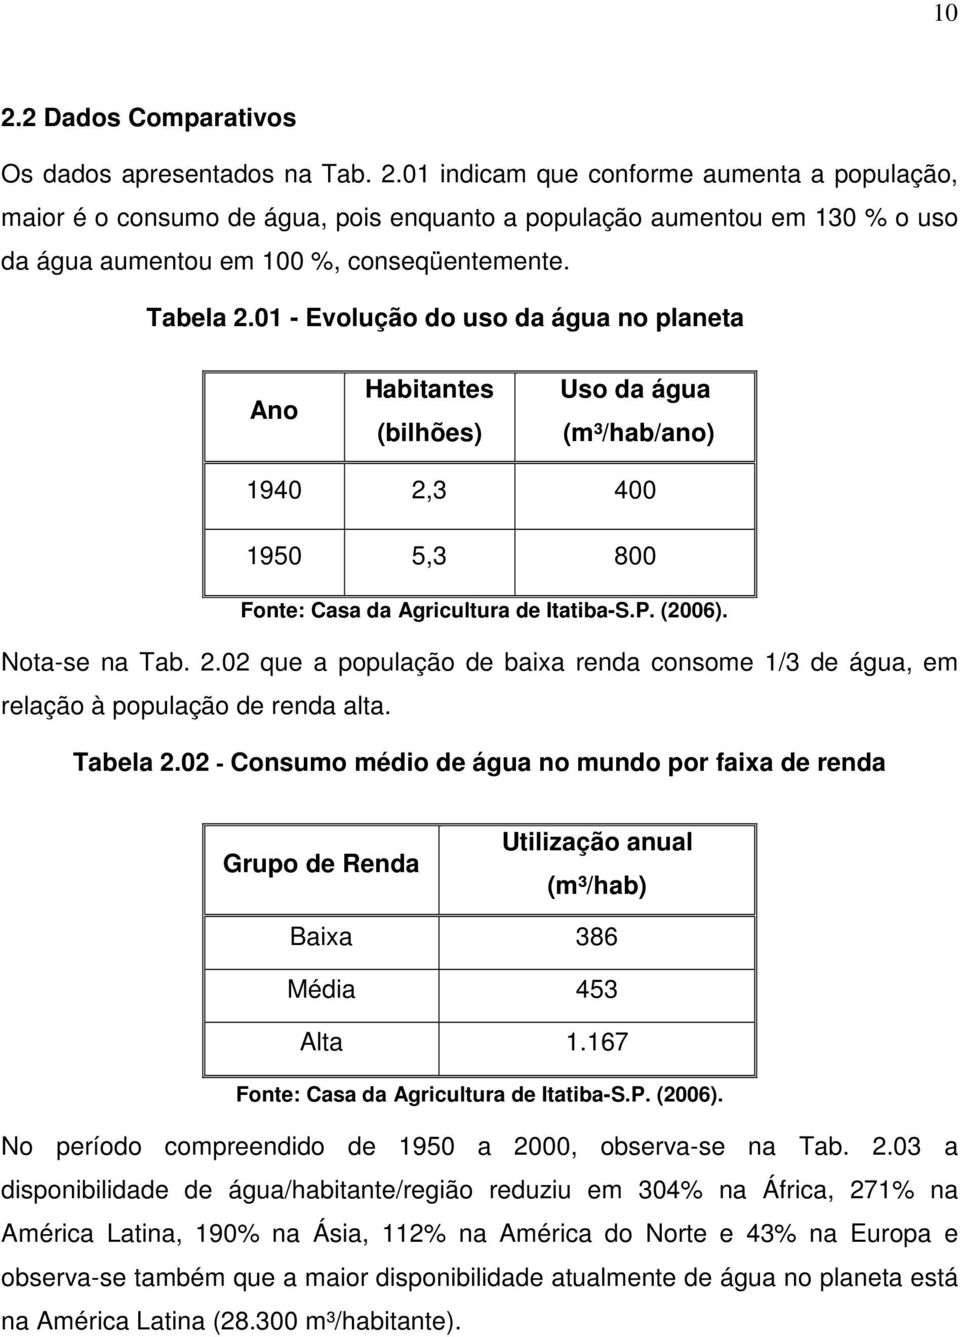 Tabela 2.02 - Consumo médio de água no mundo por faixa de renda Grupo de Renda Utilização anual (m³/hab) Baixa 386 Média 453 Alta 1.167 Fonte: Casa da Agricultura de Itatiba-S.P. (2006).